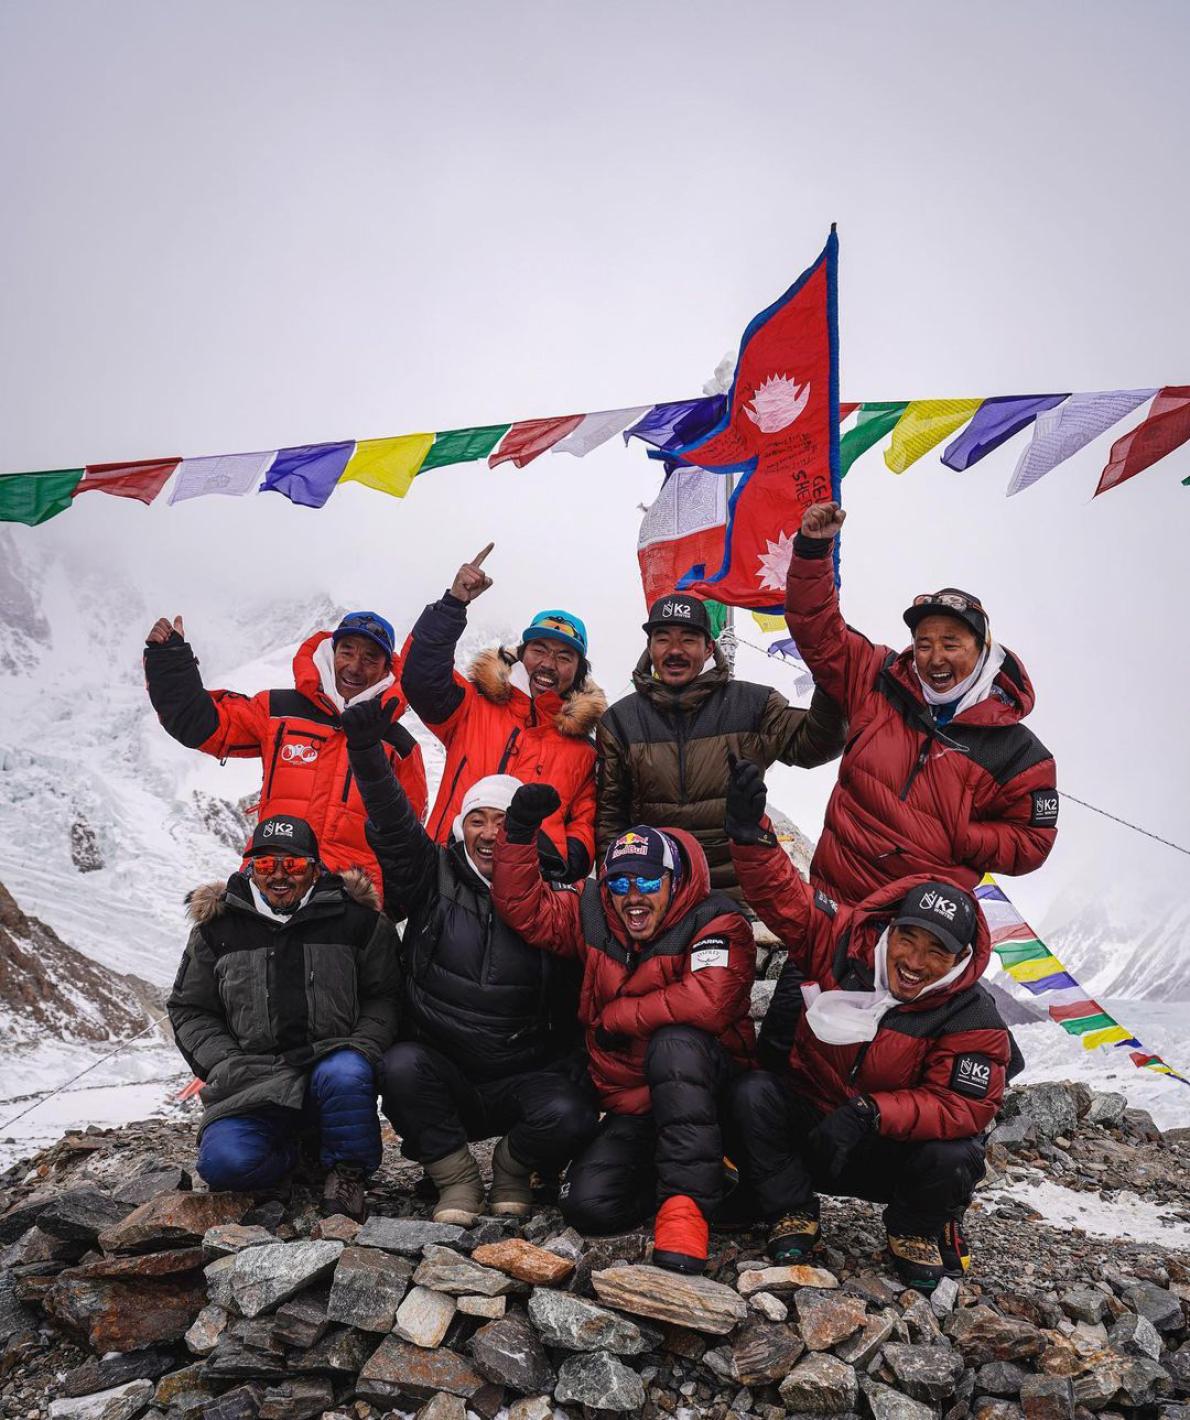 世界第2の高峰k2への冬季登頂に成功 エベレストより困難 ナショナルジオグラフィック日本版サイト